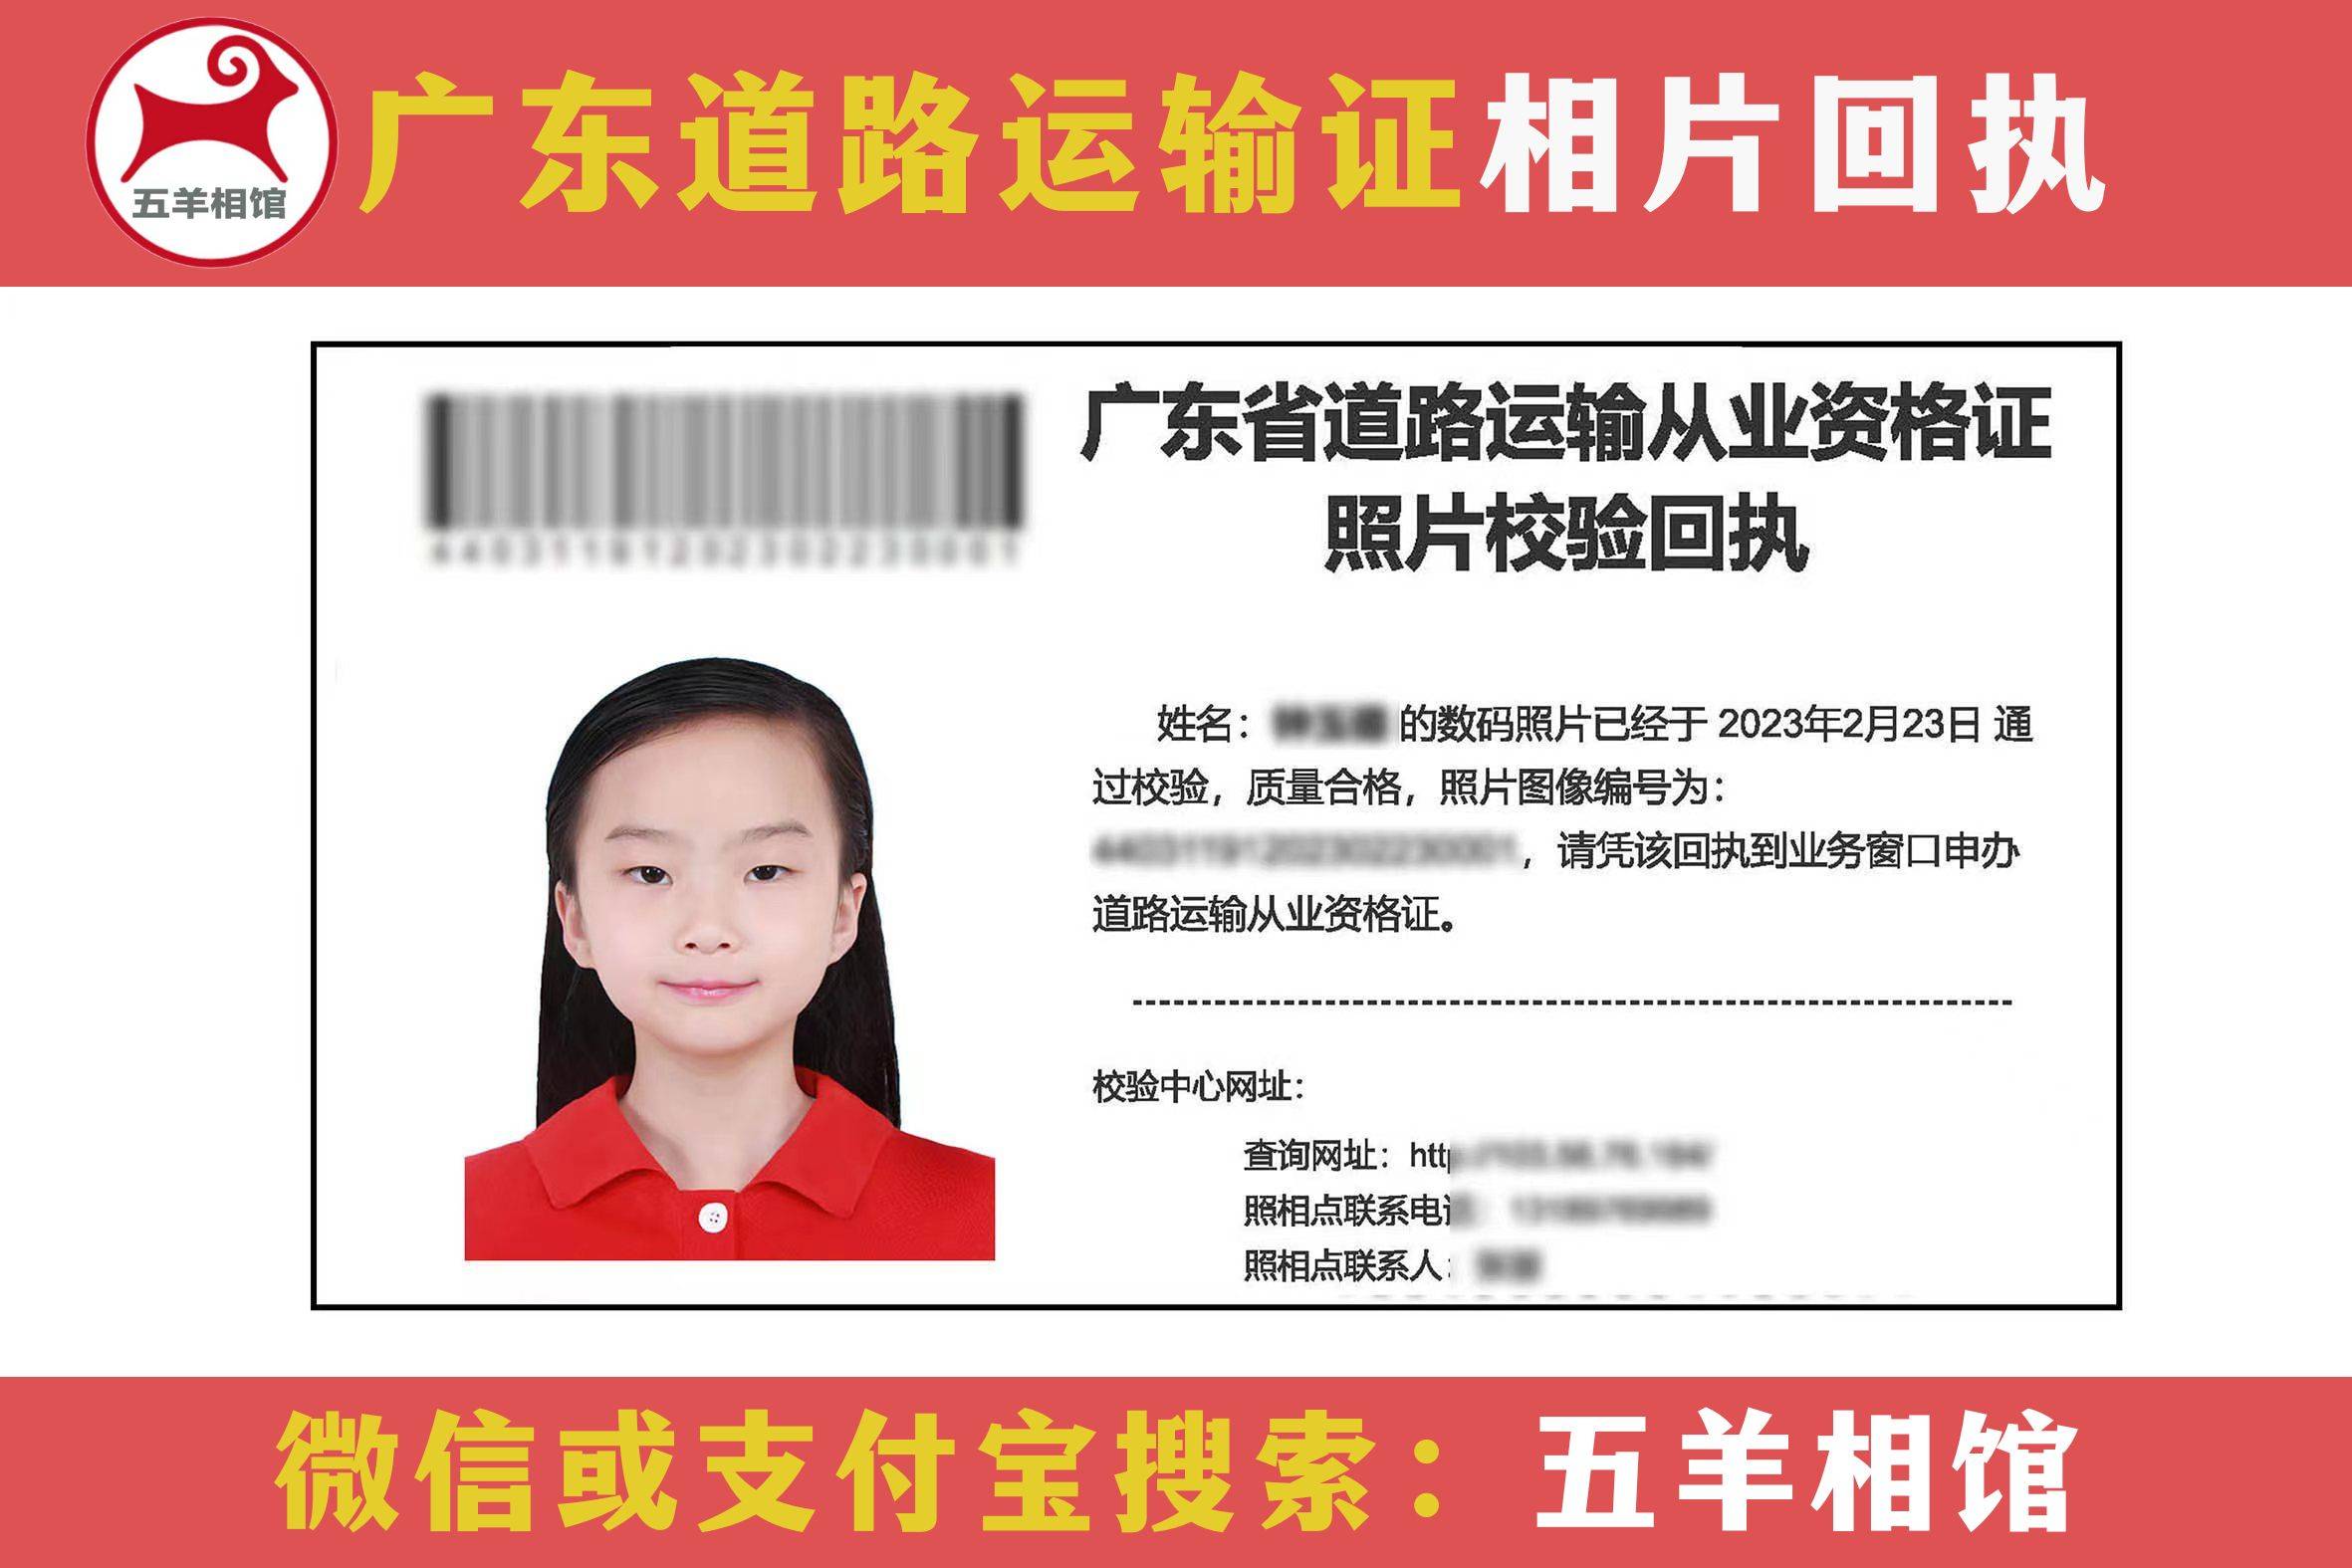 广东省网络预约出租汽车驾驶员证申请指南